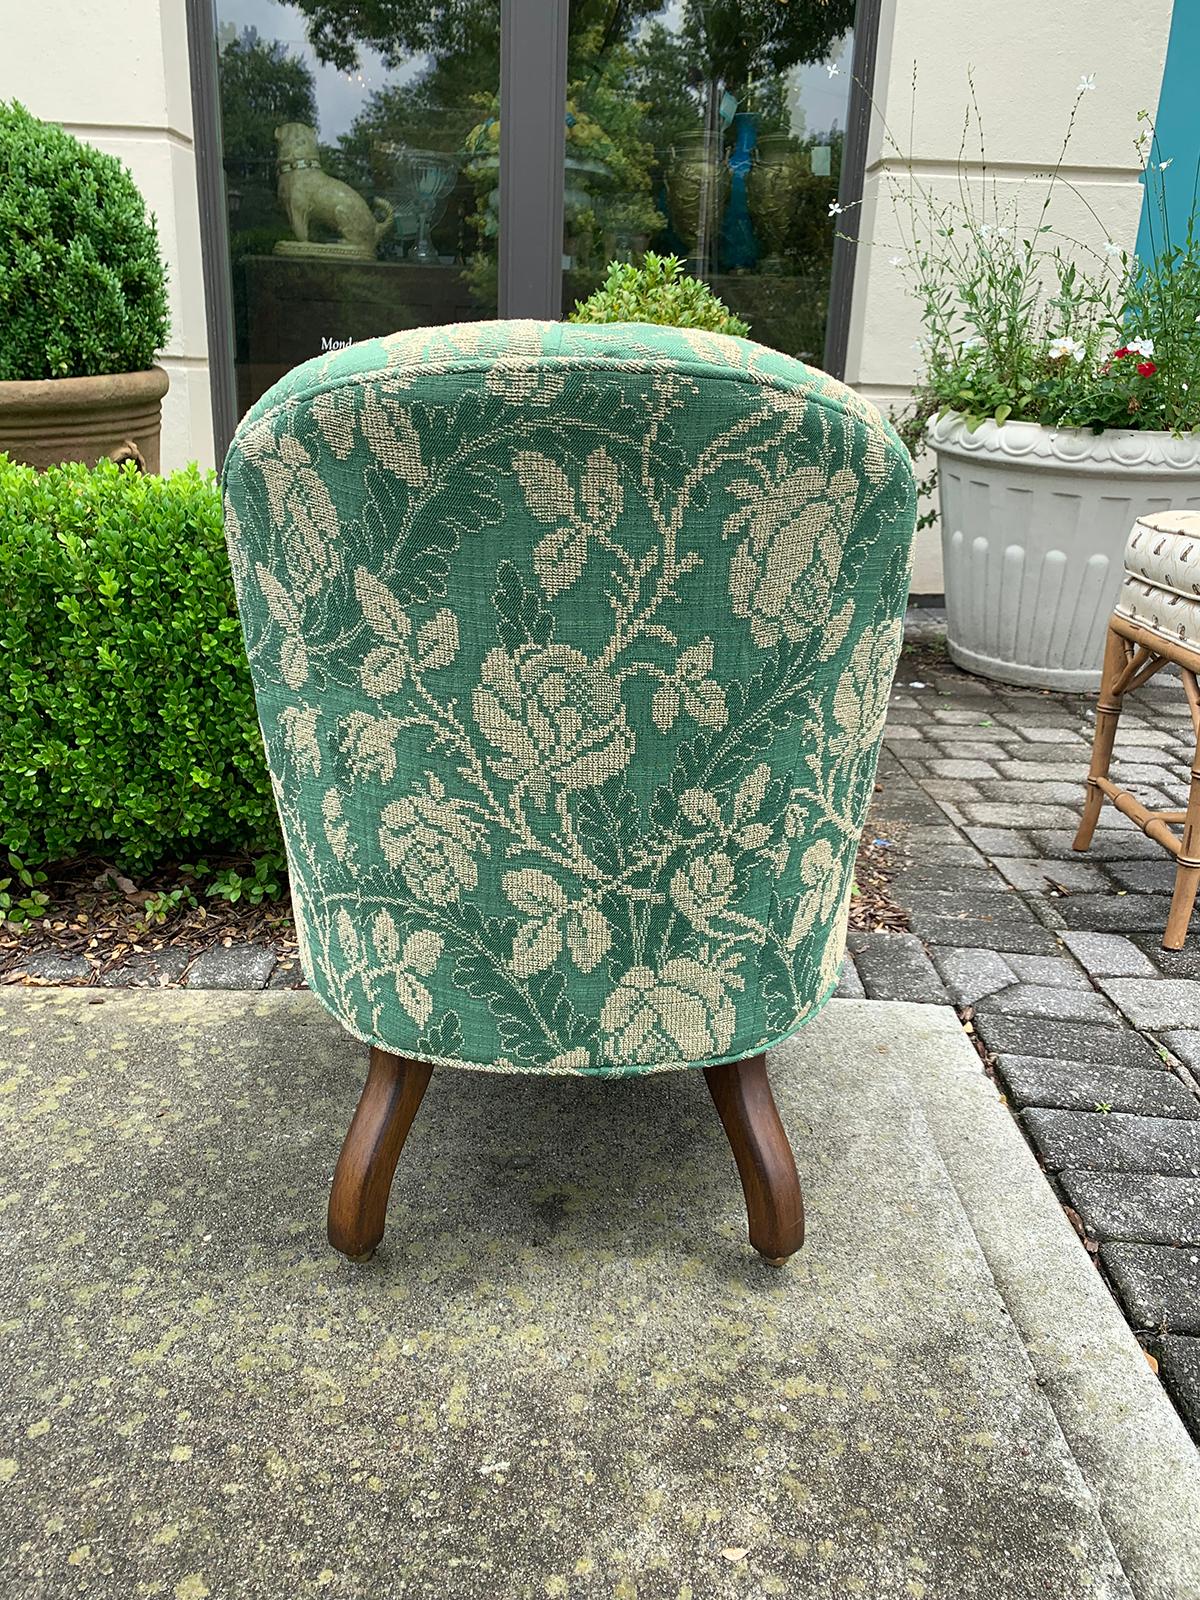 edward ferrell chair